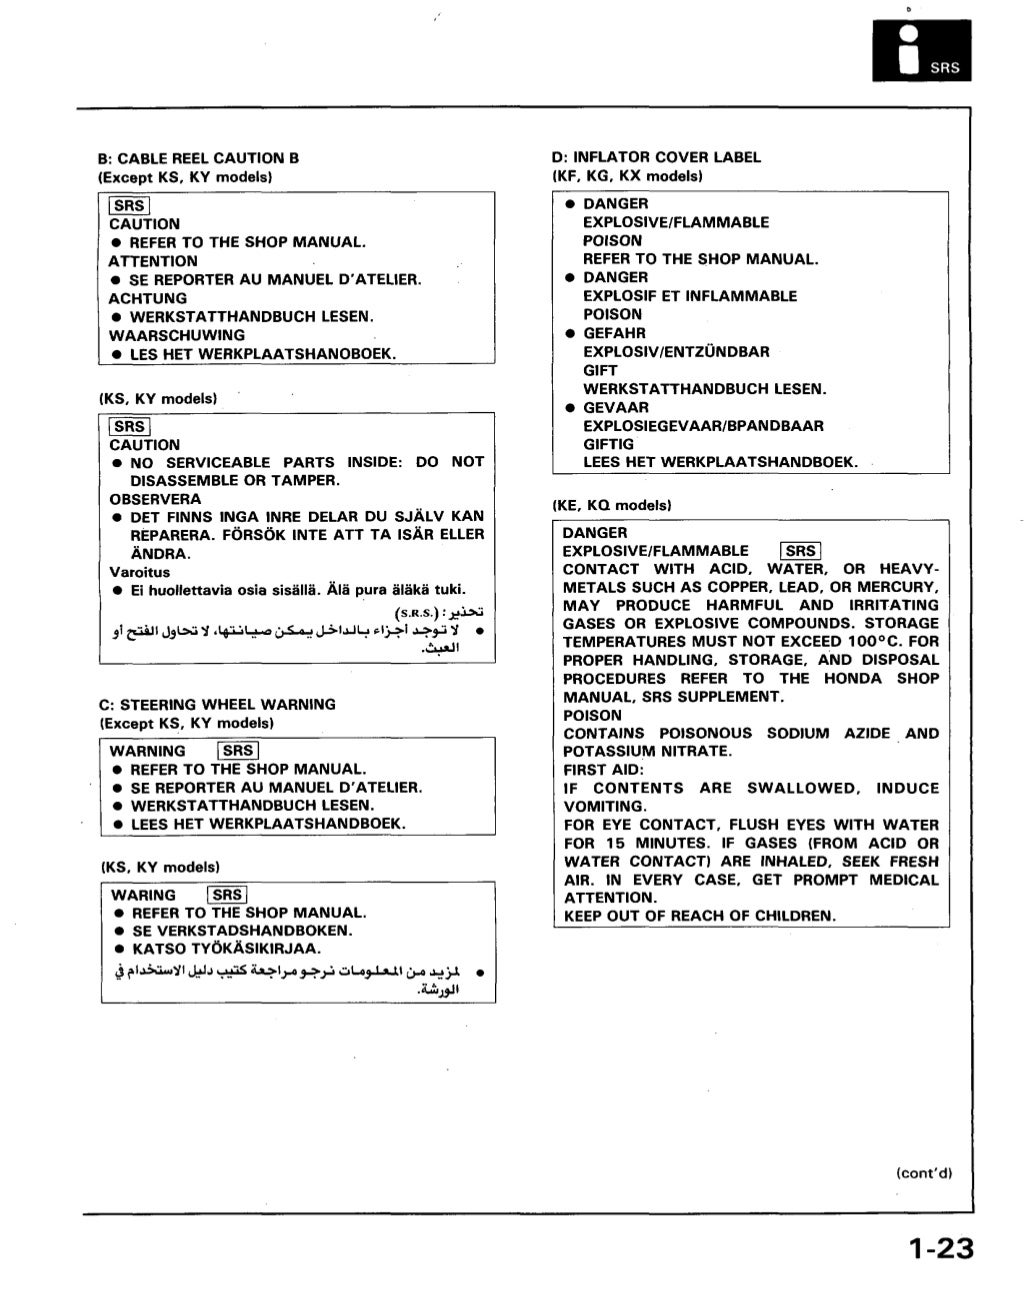 1989 ACURA LEGEND Service Repair Manual